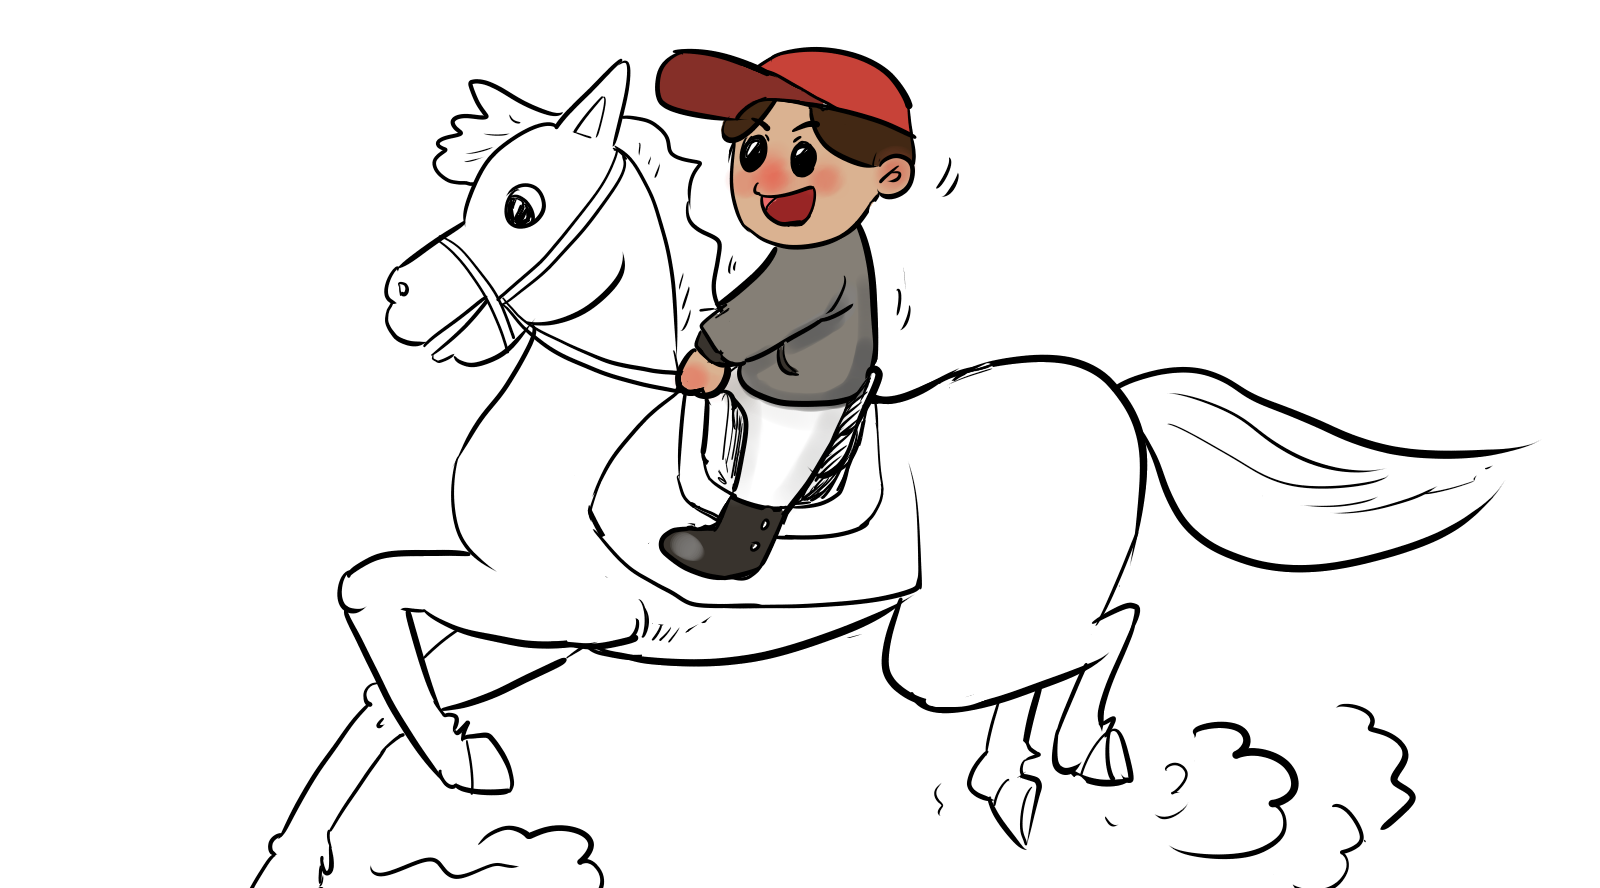 骑马的人物简笔画图片